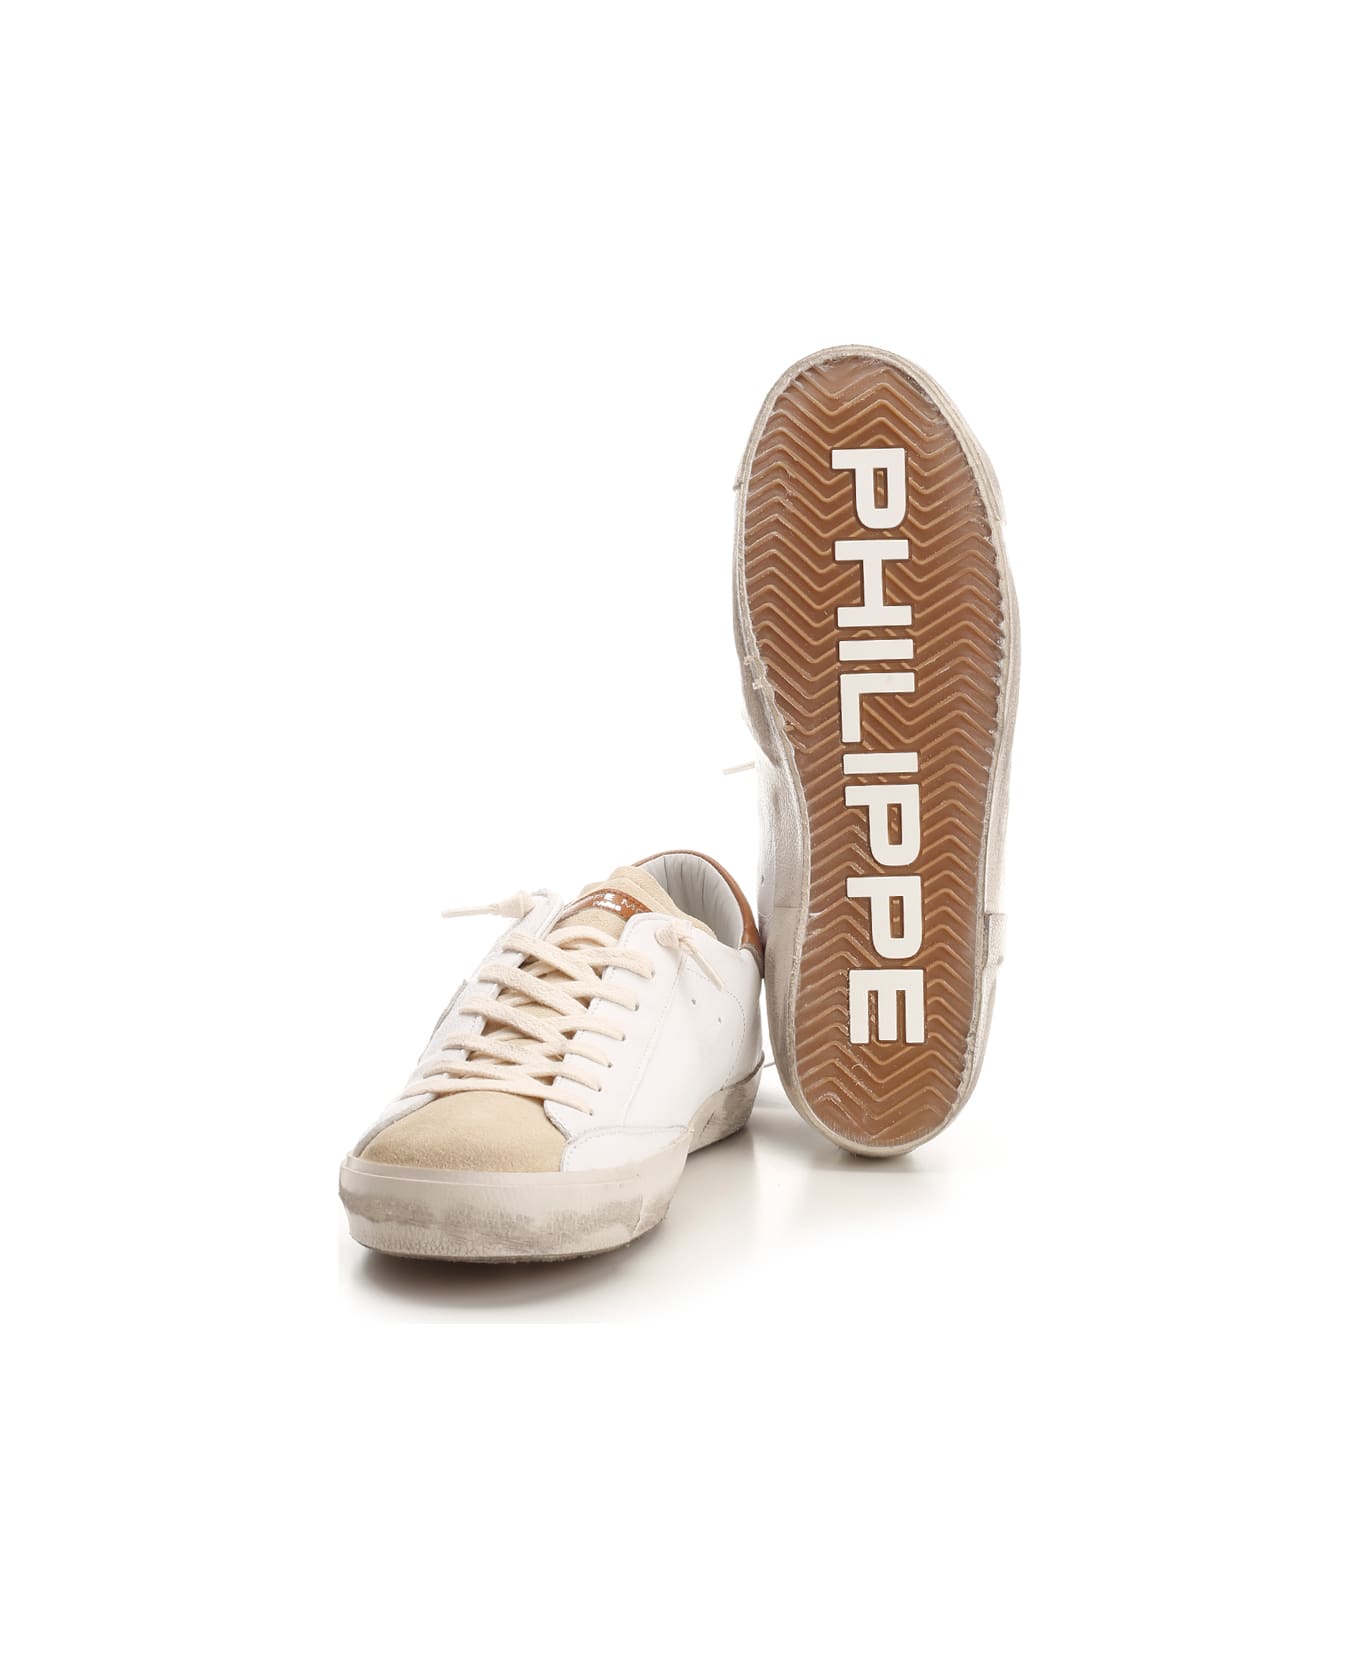 Philippe Model 'prsx' Sneaker - White